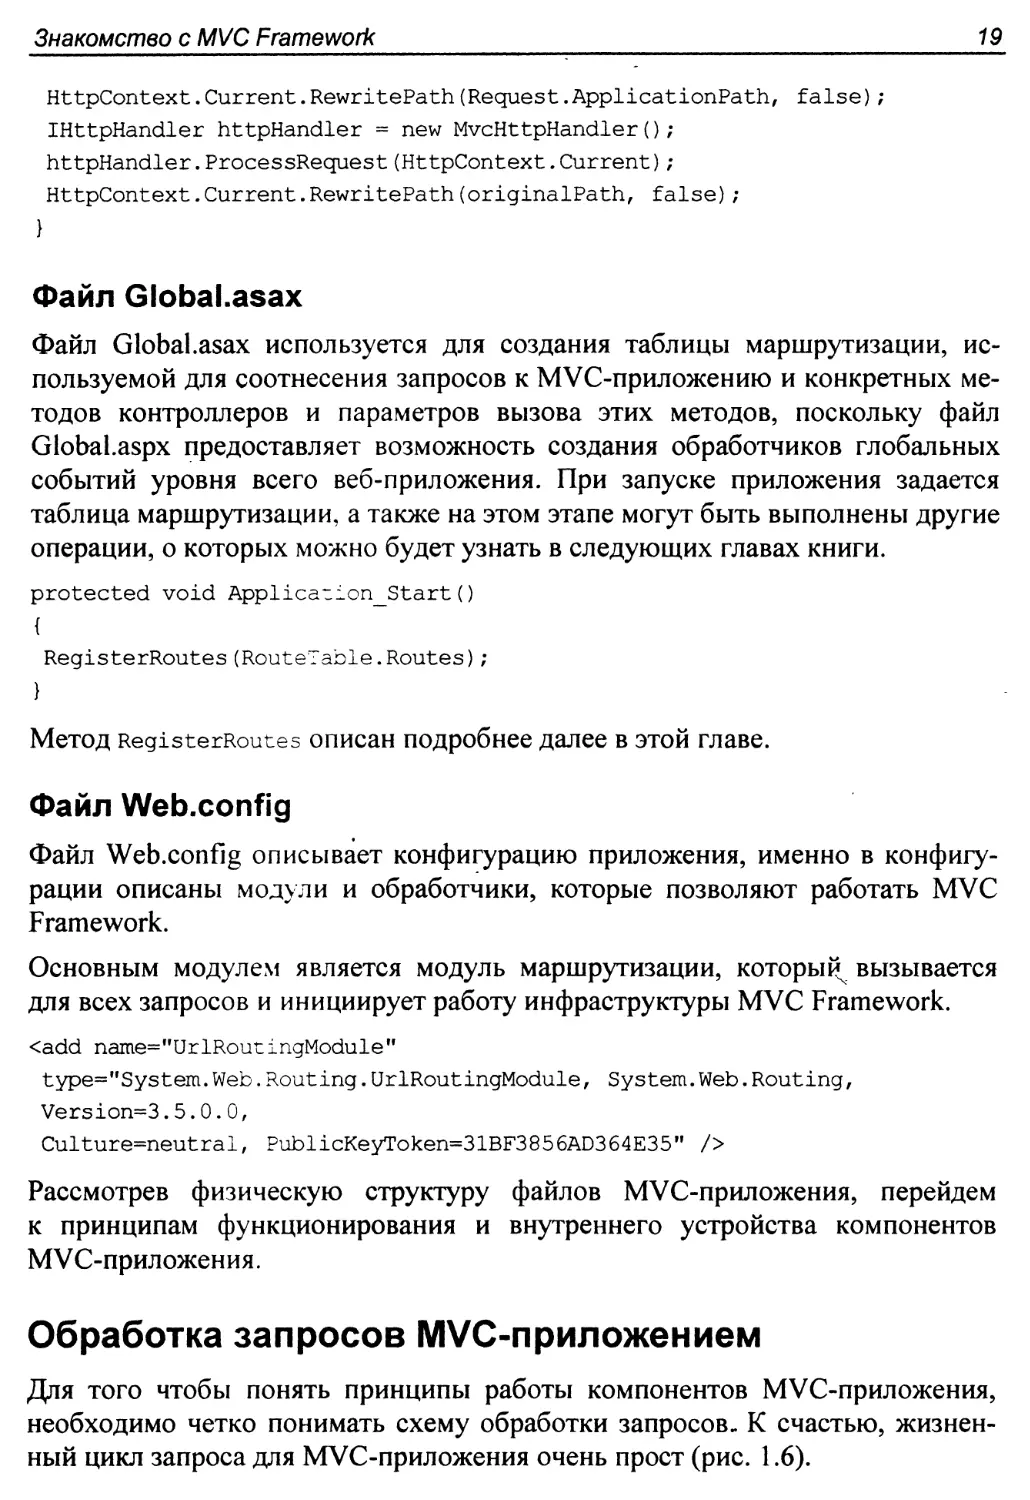 Файл Globalasax
Файл Webconfig
Обработка запросов MVC3 приложением